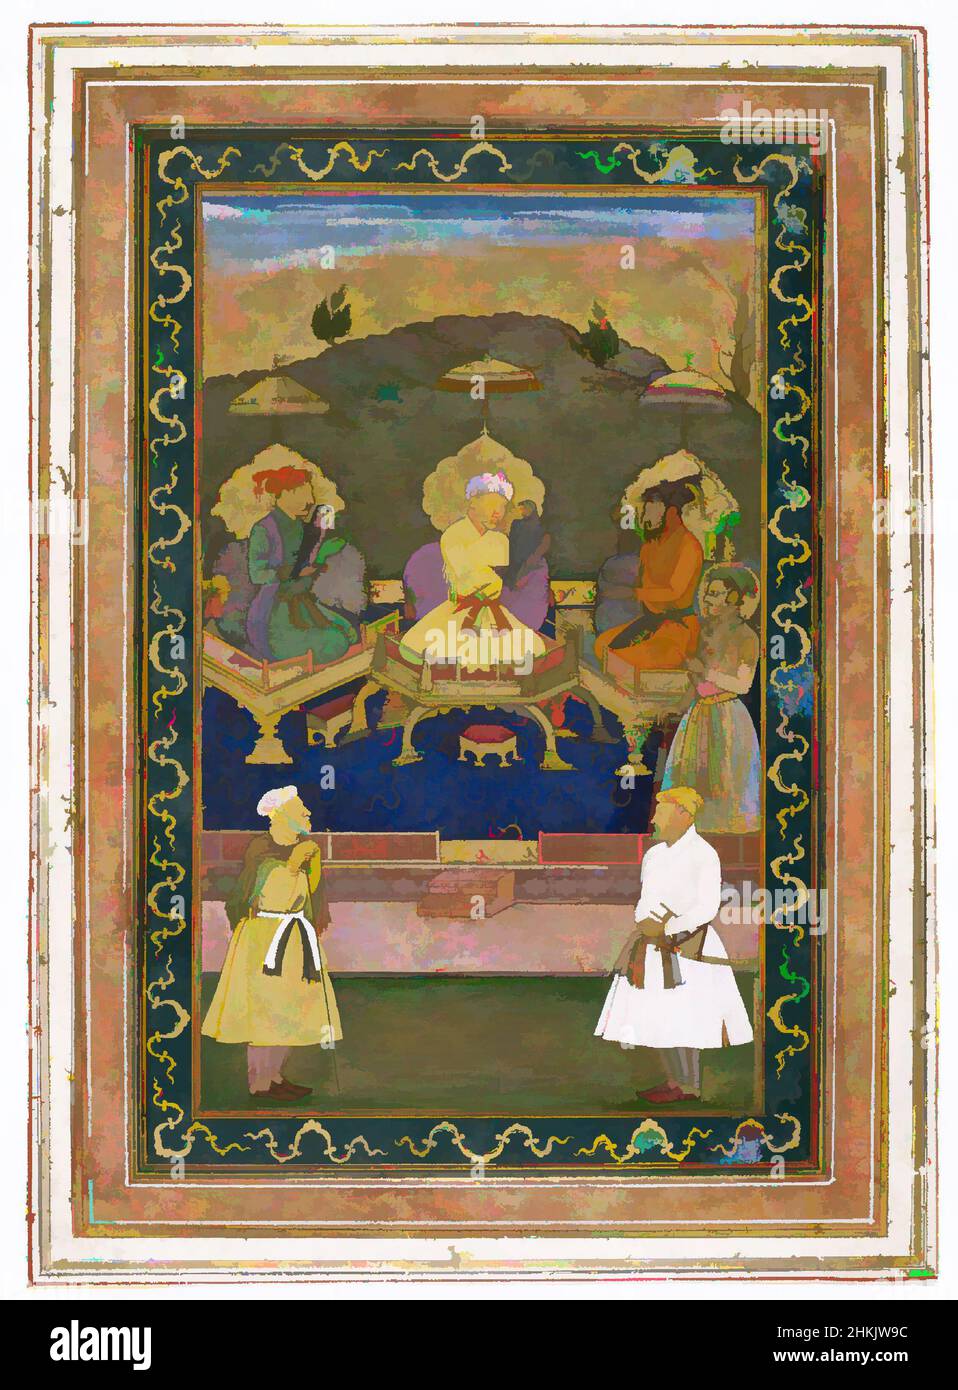 Kunst inspiriert von den Kaisern Akbar, Jahangir und Shah Jahan mit ihren Ministern und Prinz Dara Shikoh, Chitaraman, Indianer, opak Aquarell und Gold auf Papier, Indien, ca. 1630-1640, Mughal-Dynastie, 22 x 32 Zoll, 55,9 x 81,3 cm, bekar, Gericht, dara, Falke, Jäger, indische Kunst, Malerei, Klassisches Werk, das von Artotop mit einem Schuss Moderne modernisiert wurde. Formen, Farbe und Wert, auffällige visuelle Wirkung auf Kunst. Emotionen durch Freiheit von Kunstwerken auf zeitgemäße Weise. Eine zeitlose Botschaft, die eine wild kreative neue Richtung verfolgt. Künstler, die sich dem digitalen Medium zuwenden und die Artotop NFT erschaffen Stockfoto